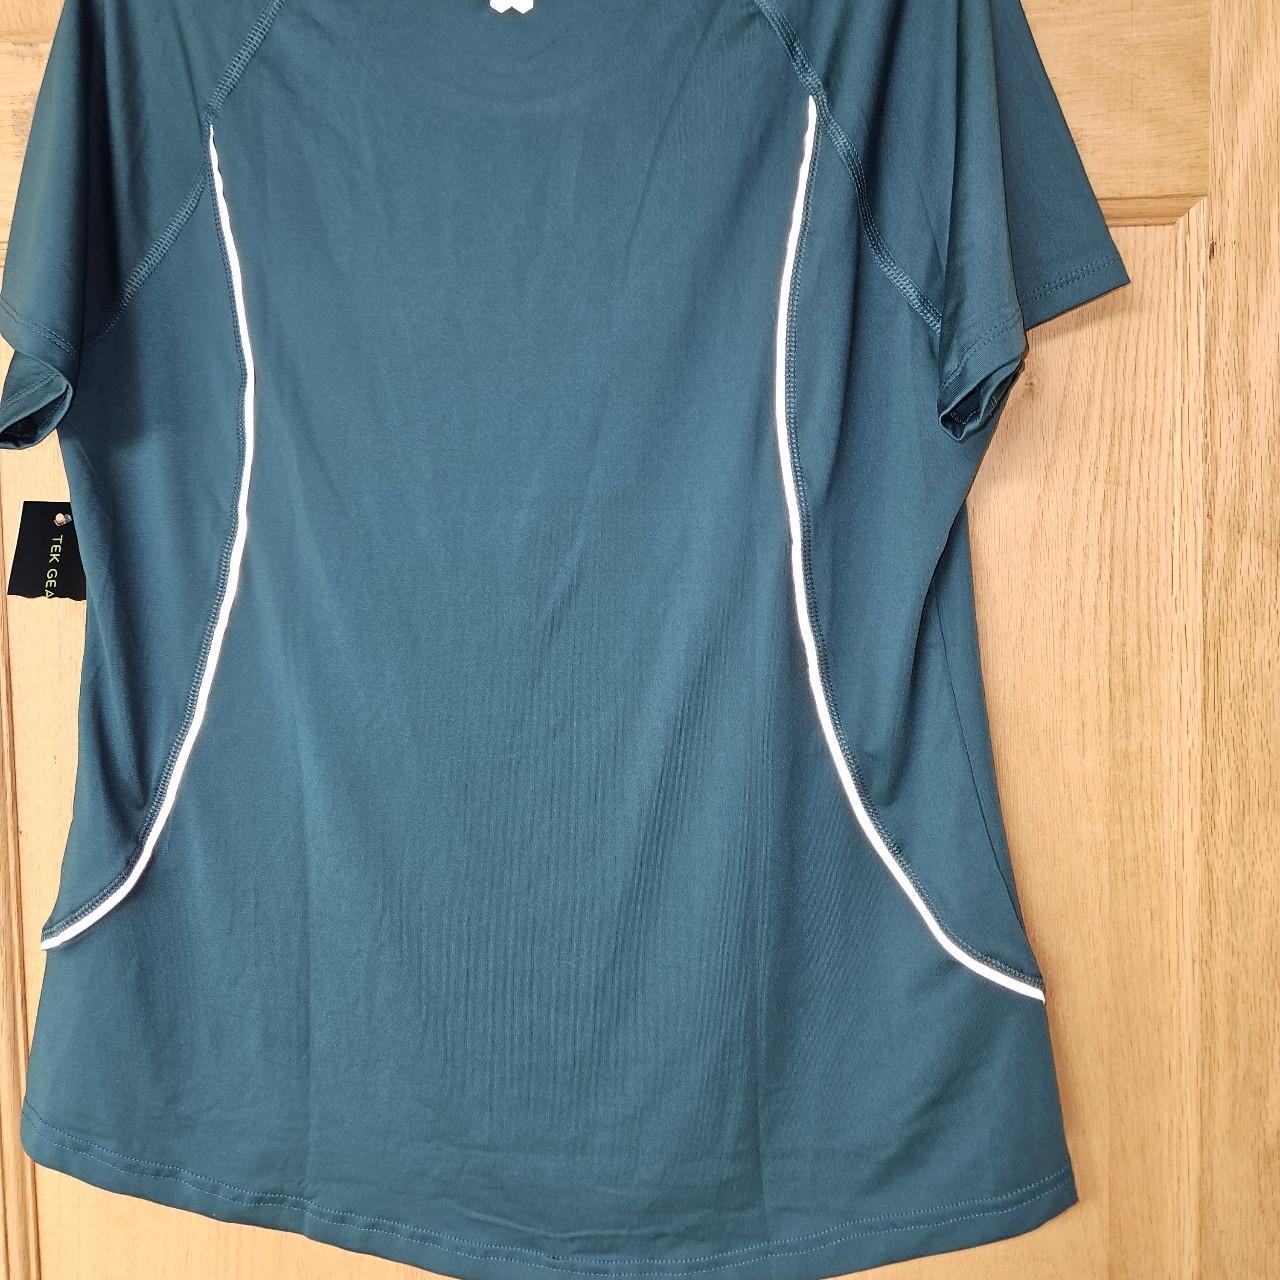 Tek Gear womens large running shirt. Reflective mark - Depop